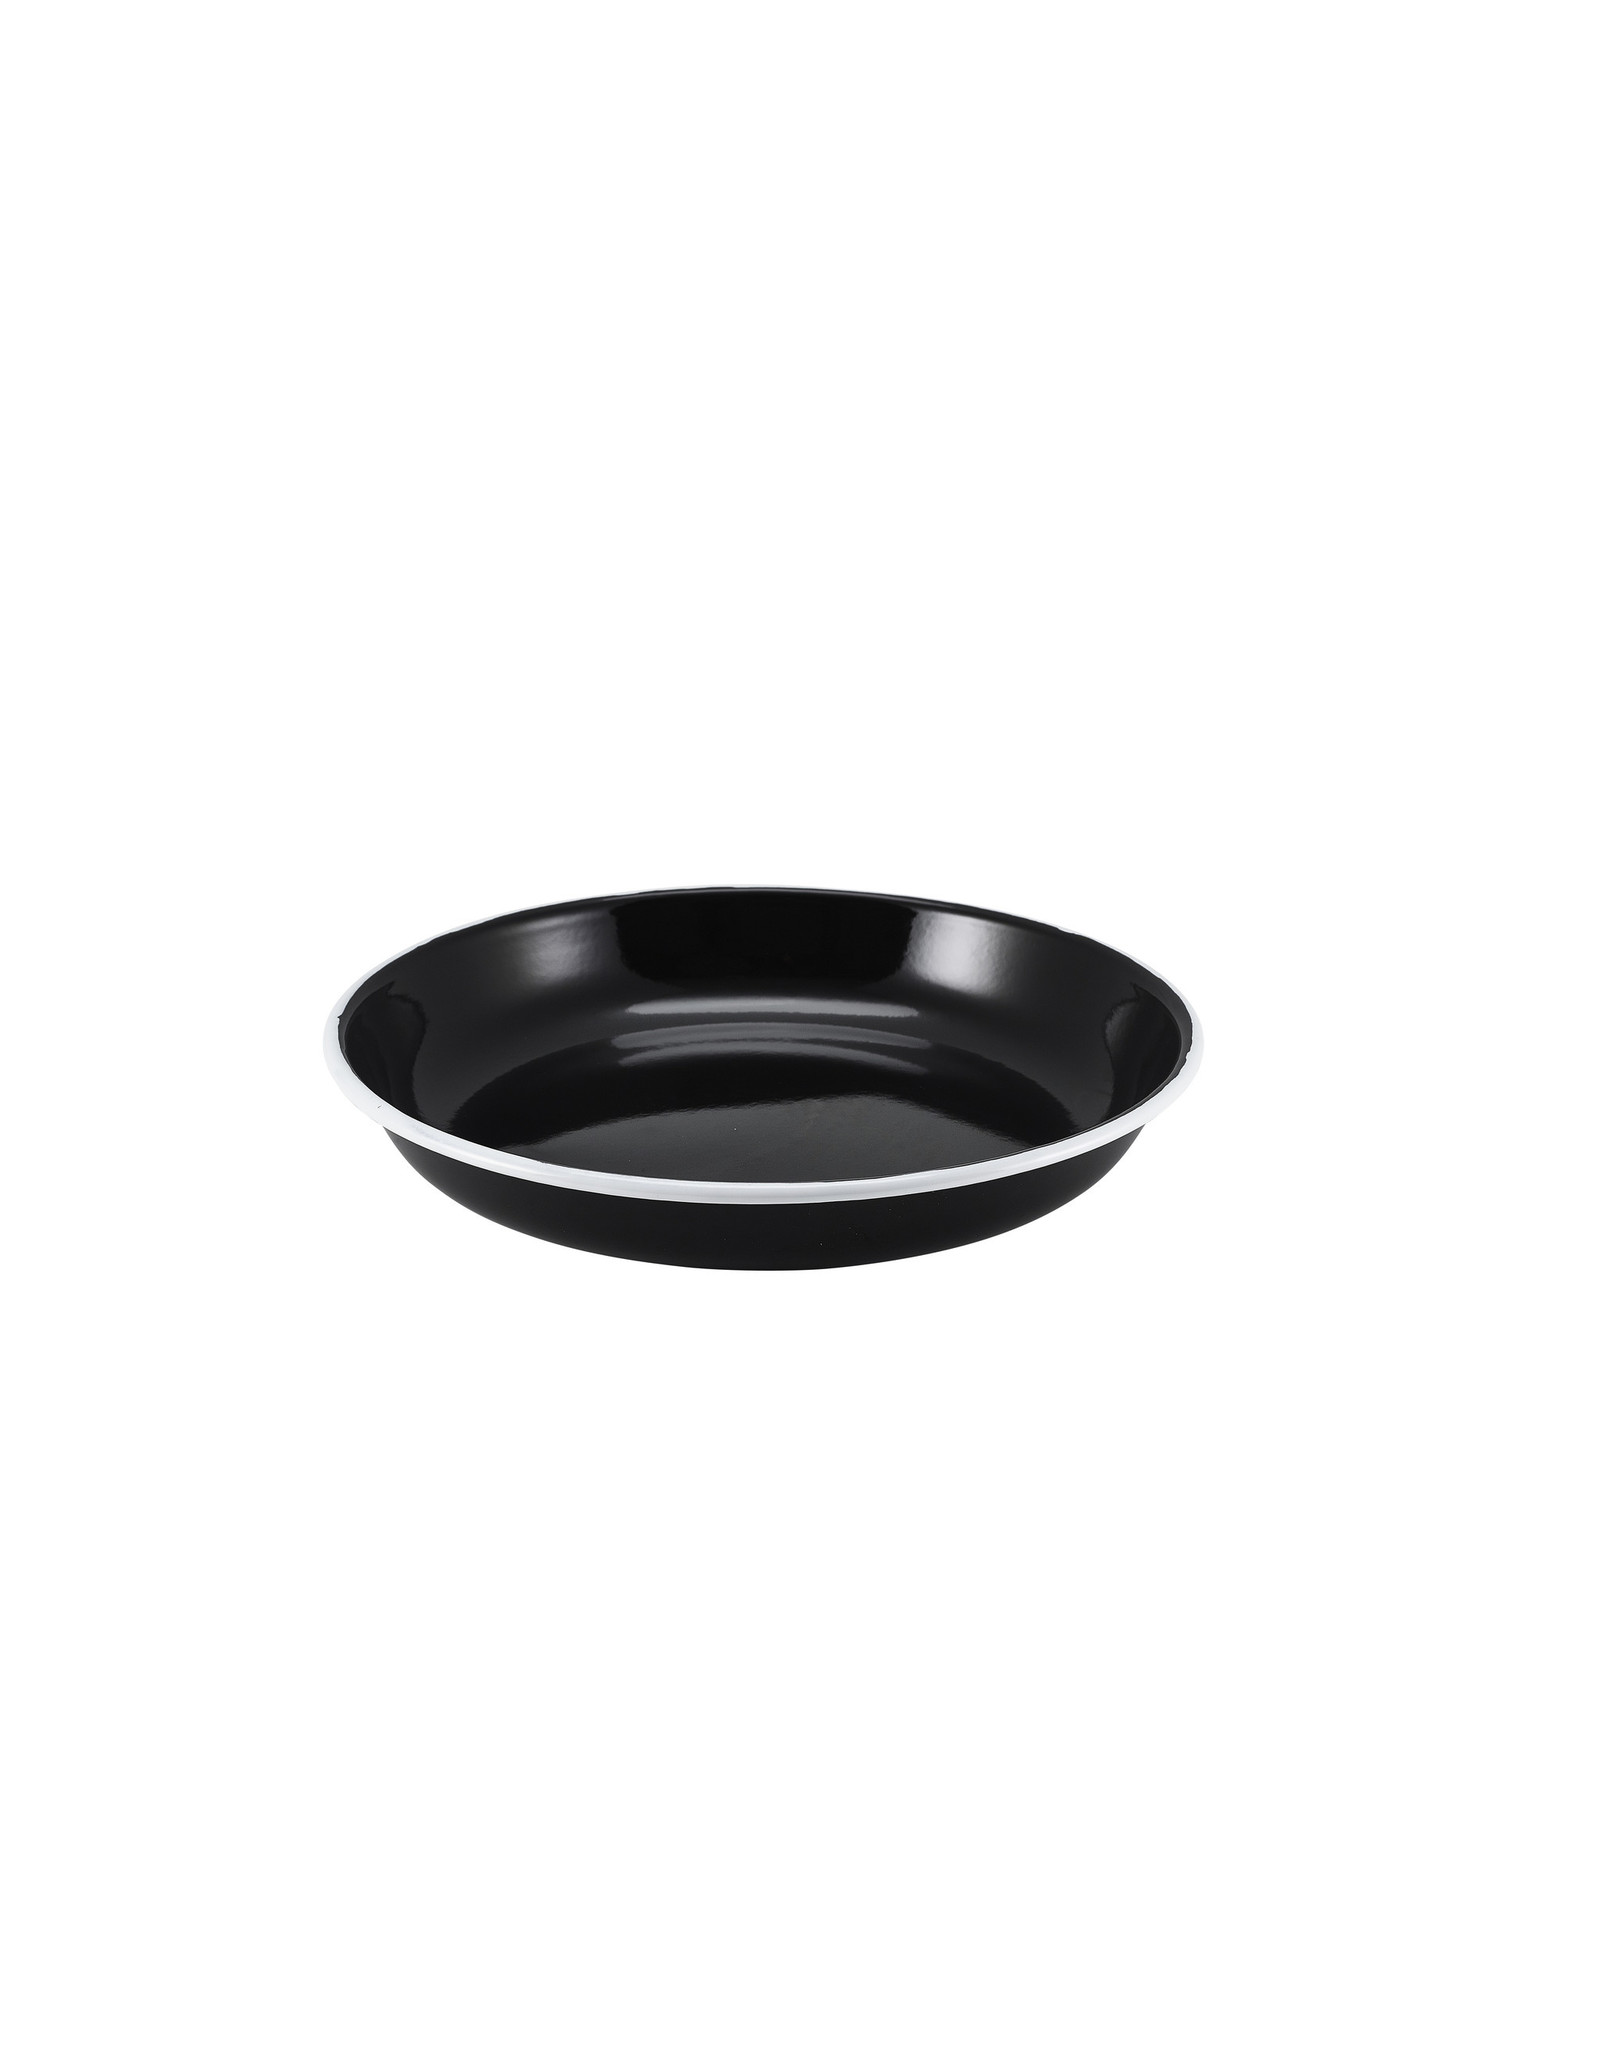 Stylepoint Enamel pasta plate black w/ white edge 24cm